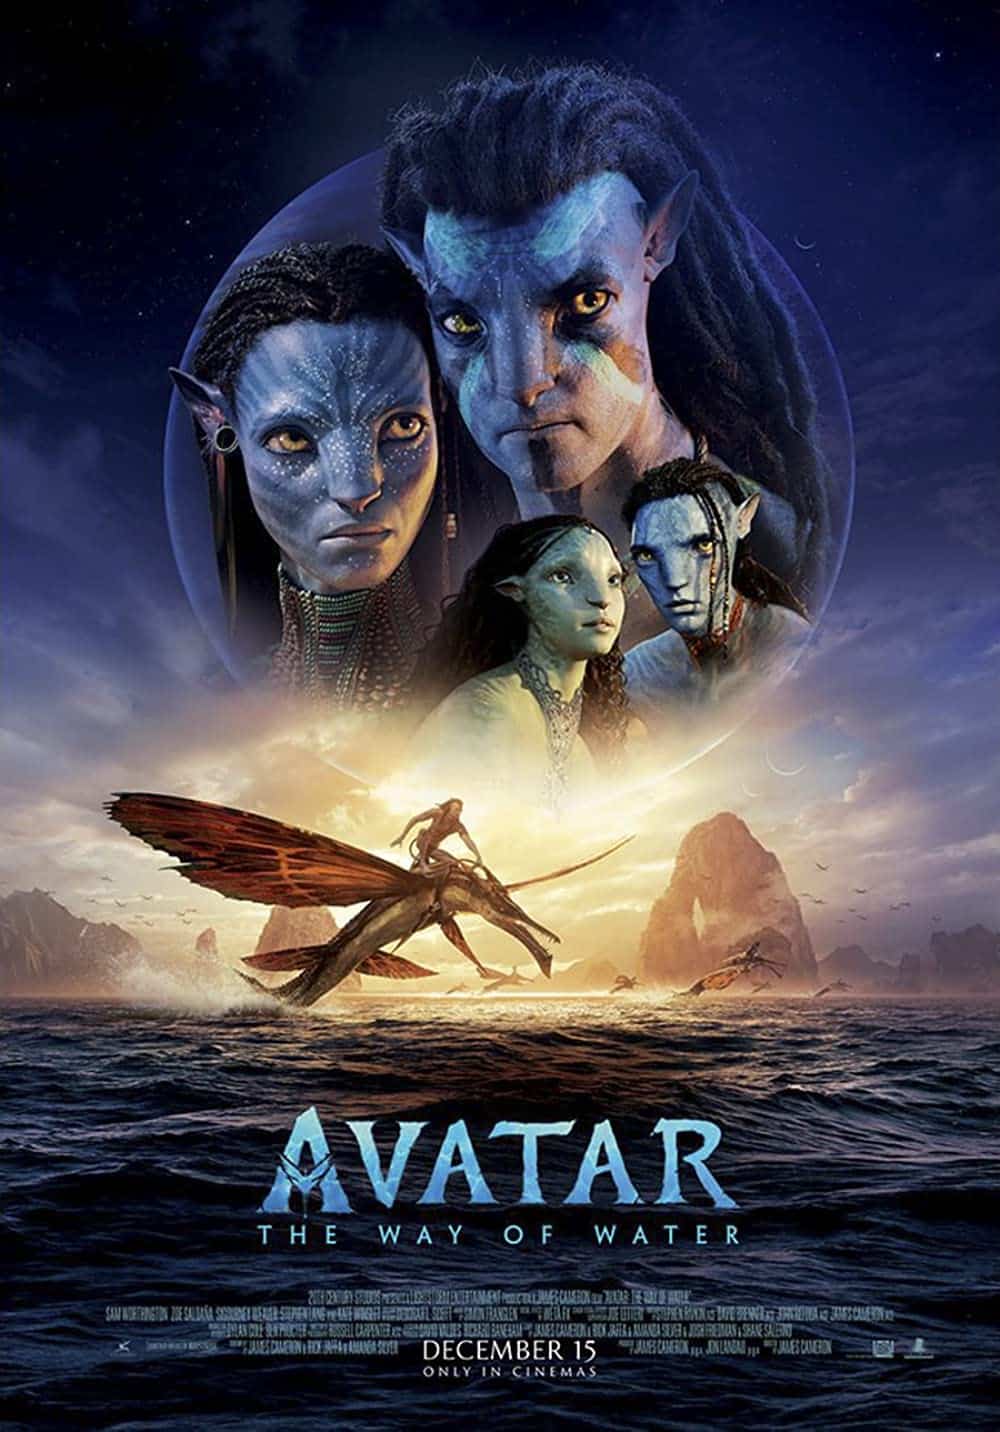 Avatar full movie in hindi download filmy4wap a grammar of akkadian free pdf download